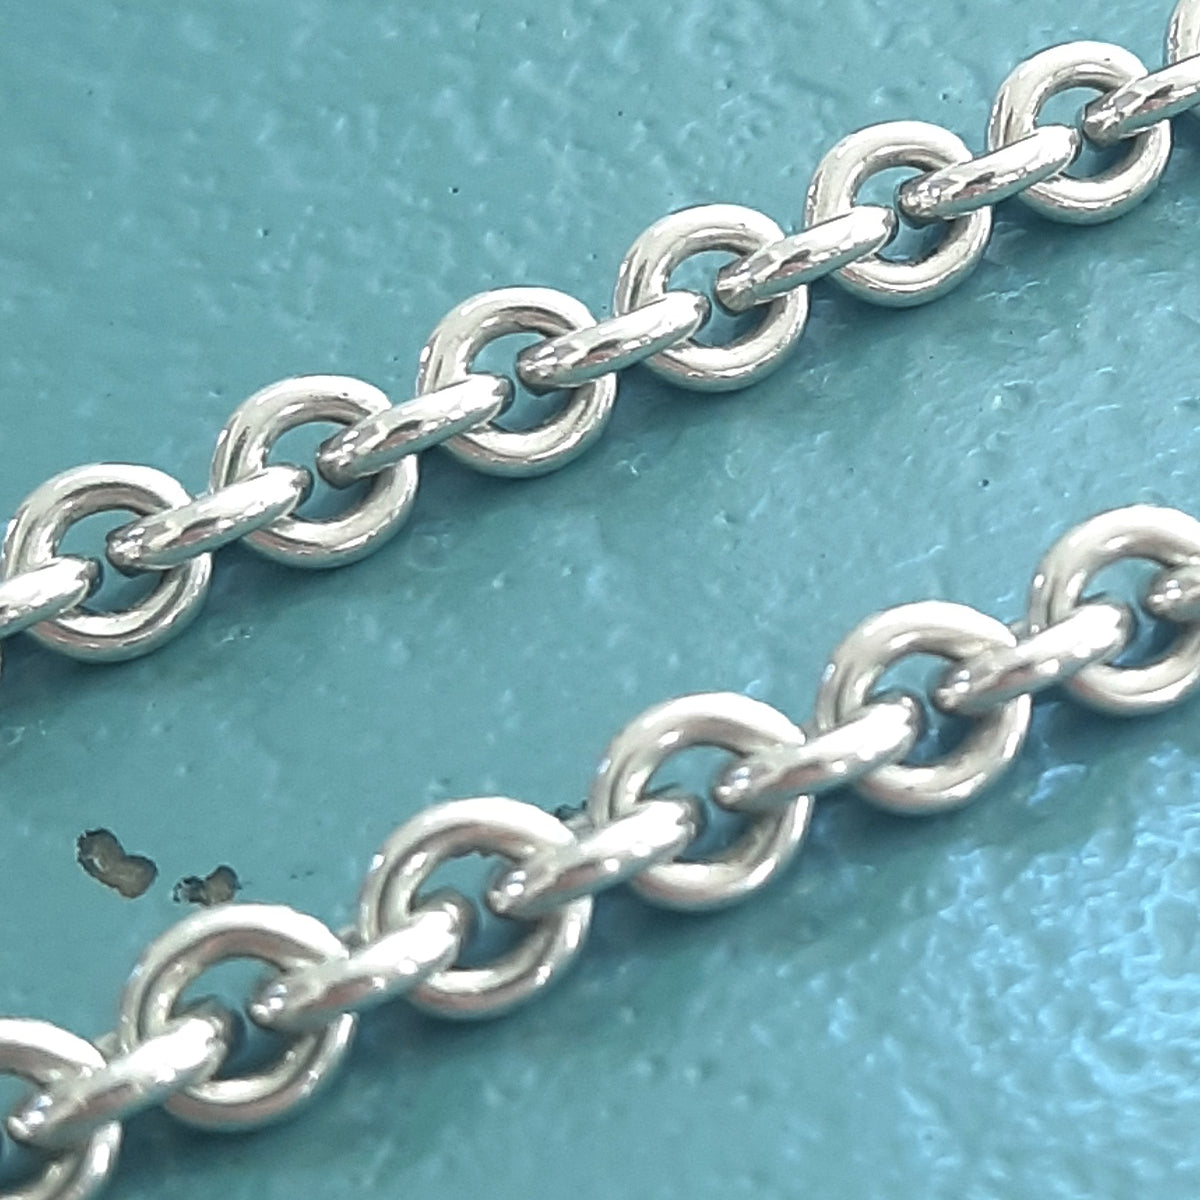 ヴィンテージ シルバー925 ケーブルチェーン トグル ネックレス 38g / Vintage Sterling Silver Cable Chain Toggle Necklace